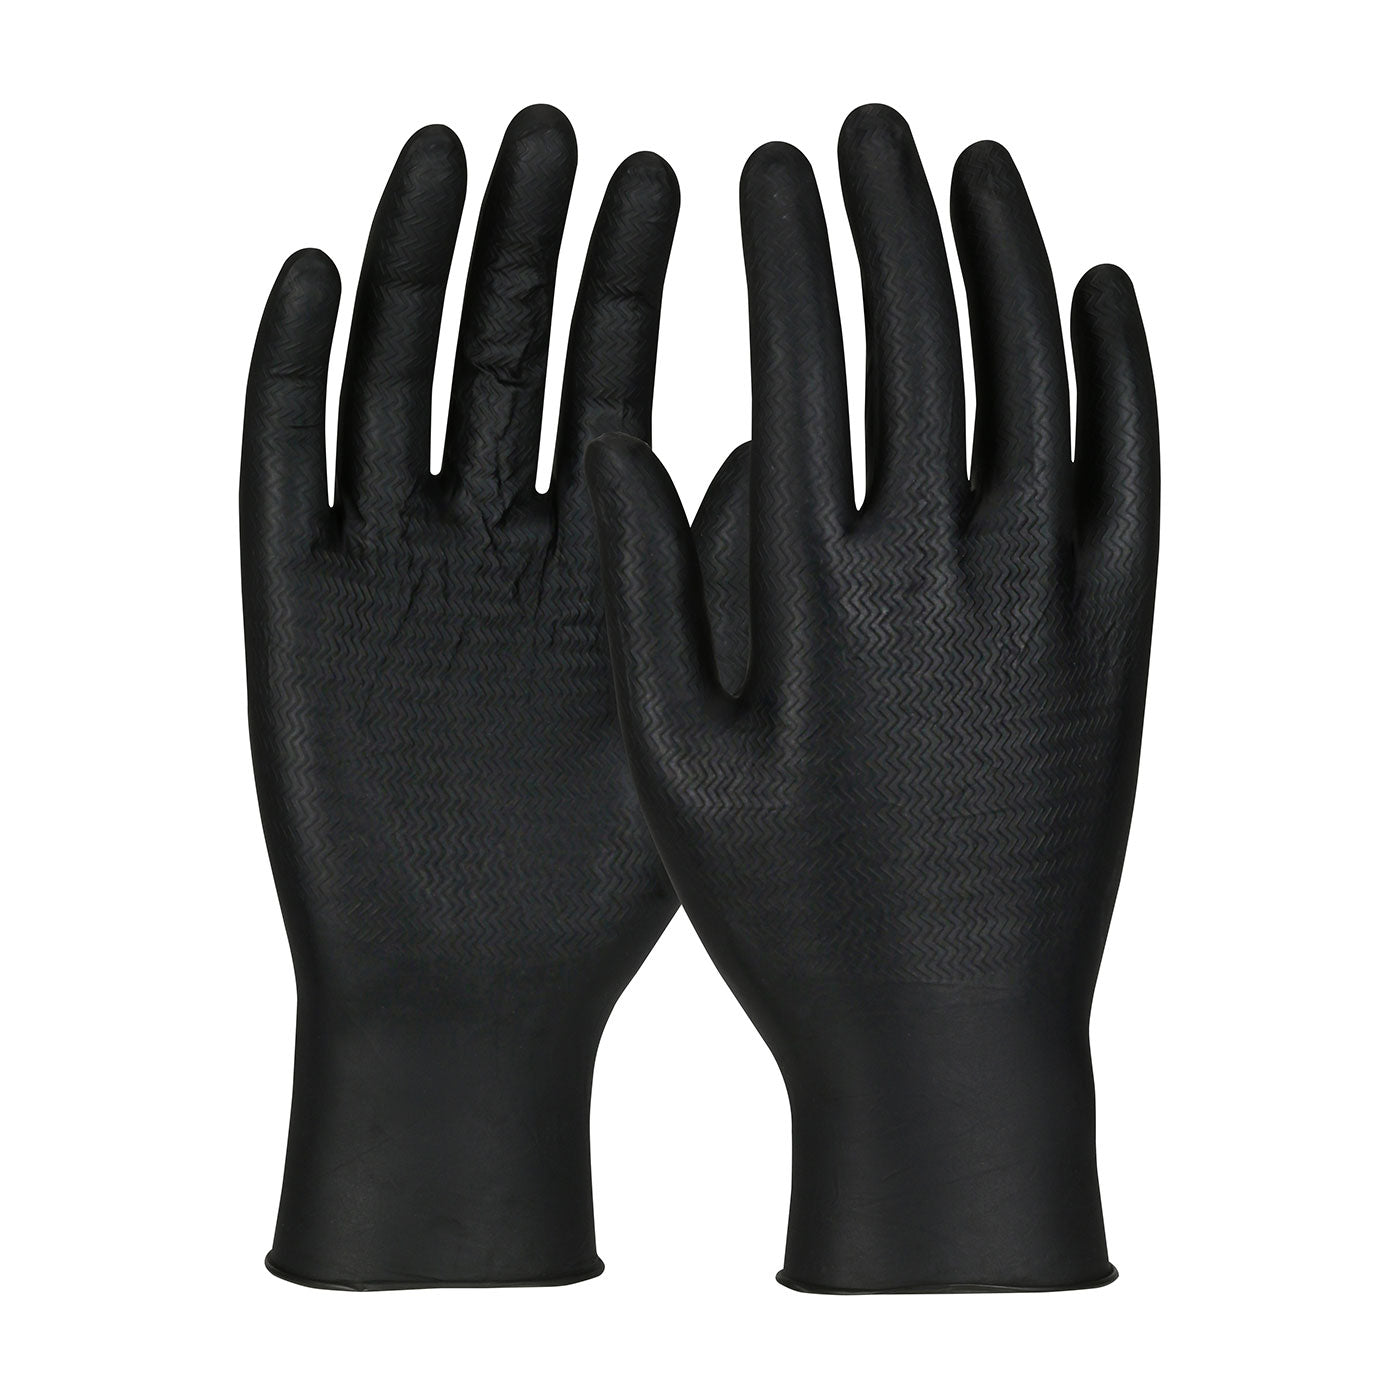 Ambi-dex® WOW™ Grip Gloves - BLACK